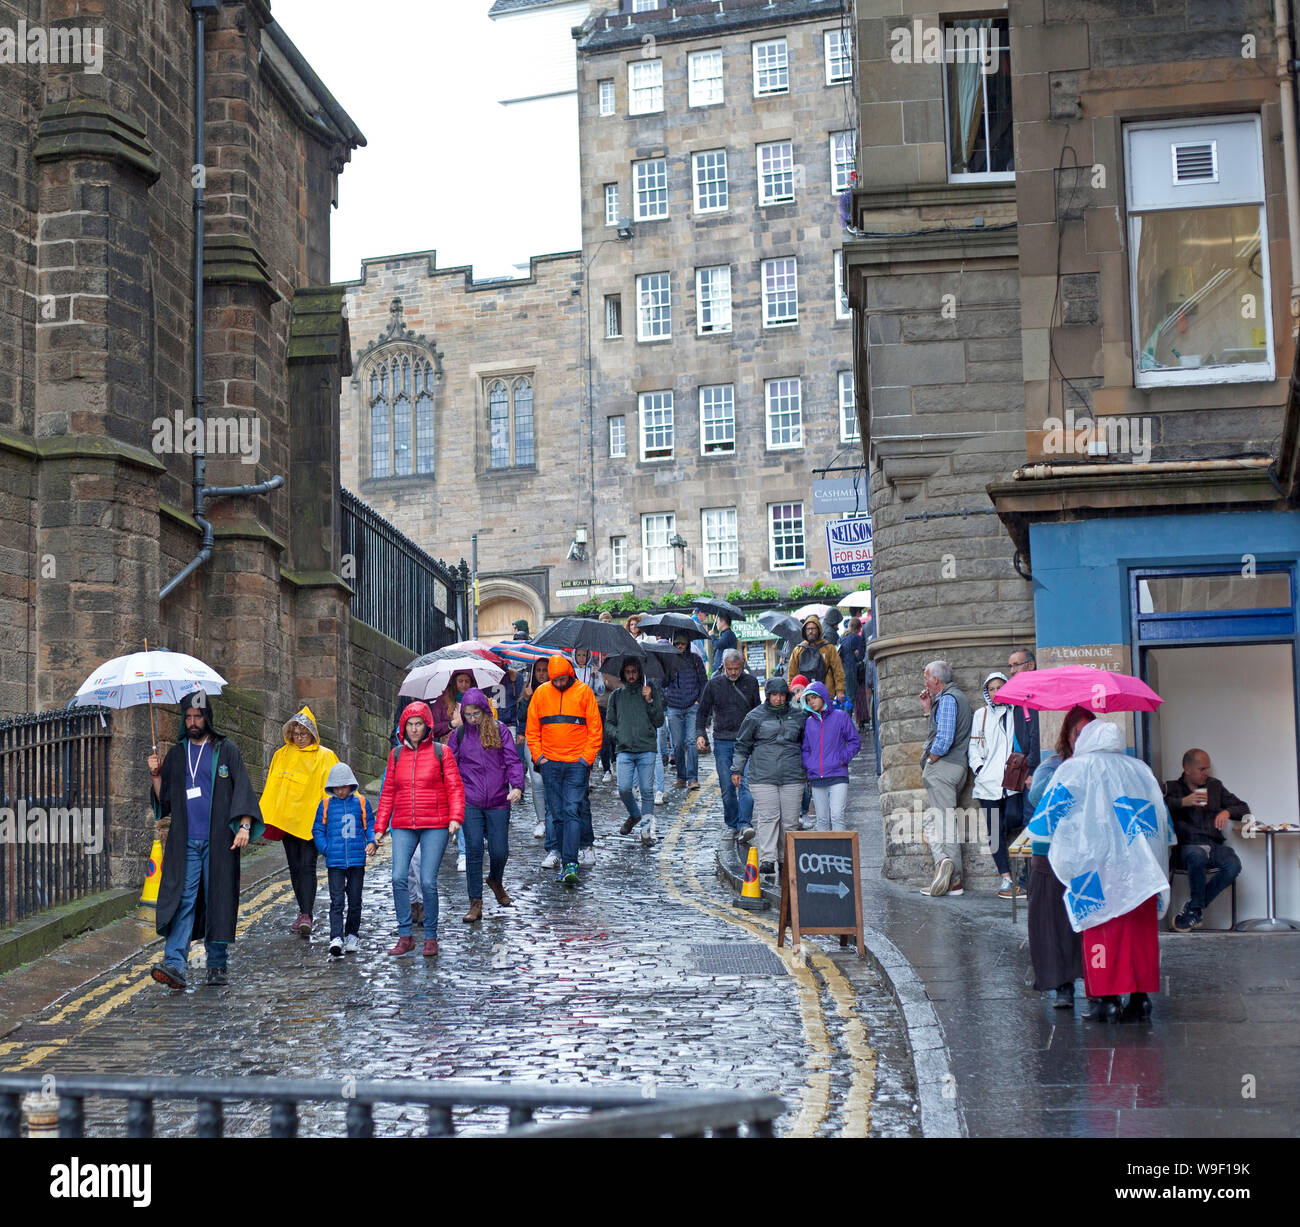 Edinburgh Victoria Terrace, à côté de Royal Mile, Écosse, Royaume-Uni. 13 août 2019. Des averses de pluie intermittentes lumineuses mais très lourdes ne sont pas très amusantes pour ces visiteurs lors de la visite de la ville près de Castlehill. Les prévisions pour les prochains jours semblent très humides. Banque D'Images